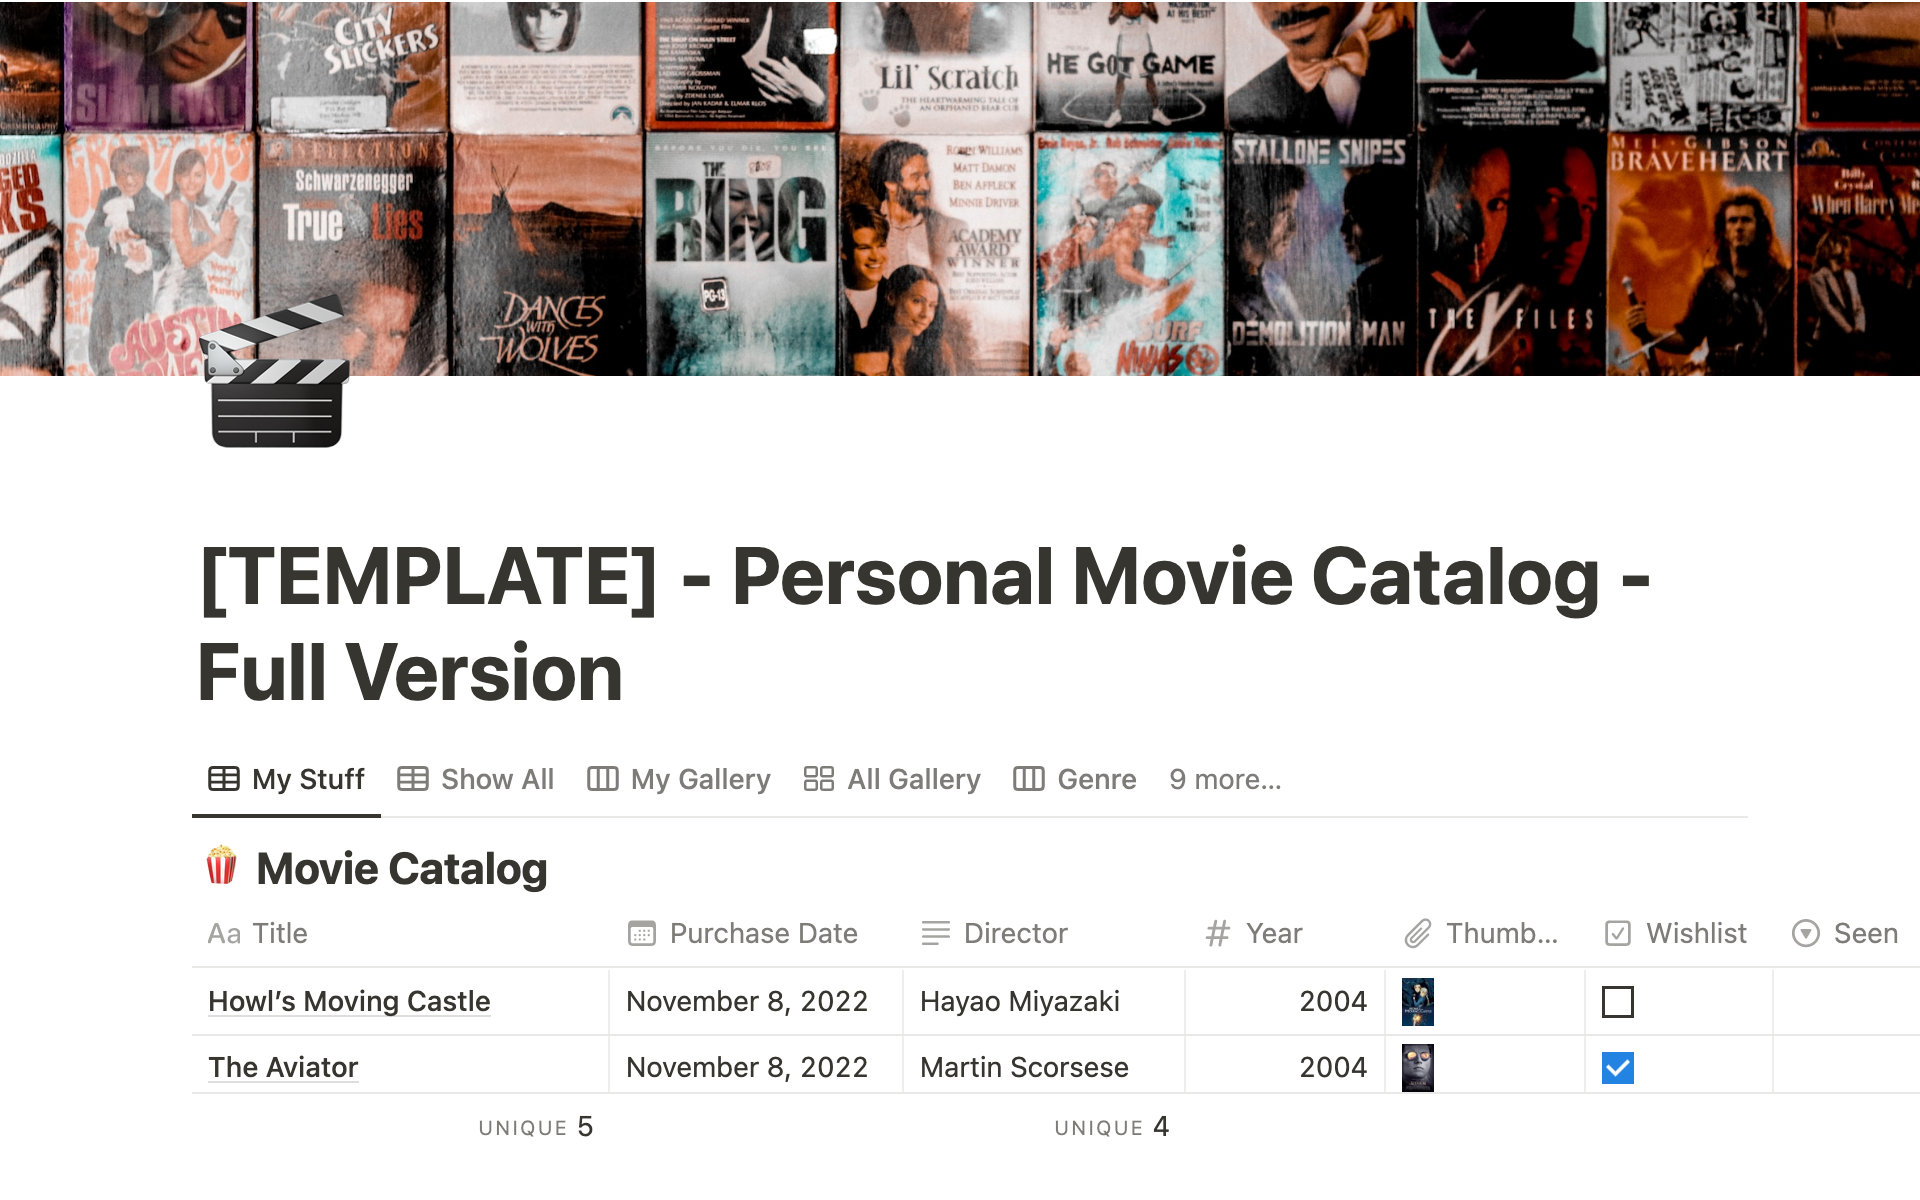 Aperçu du modèle de Personal Movie Catalog